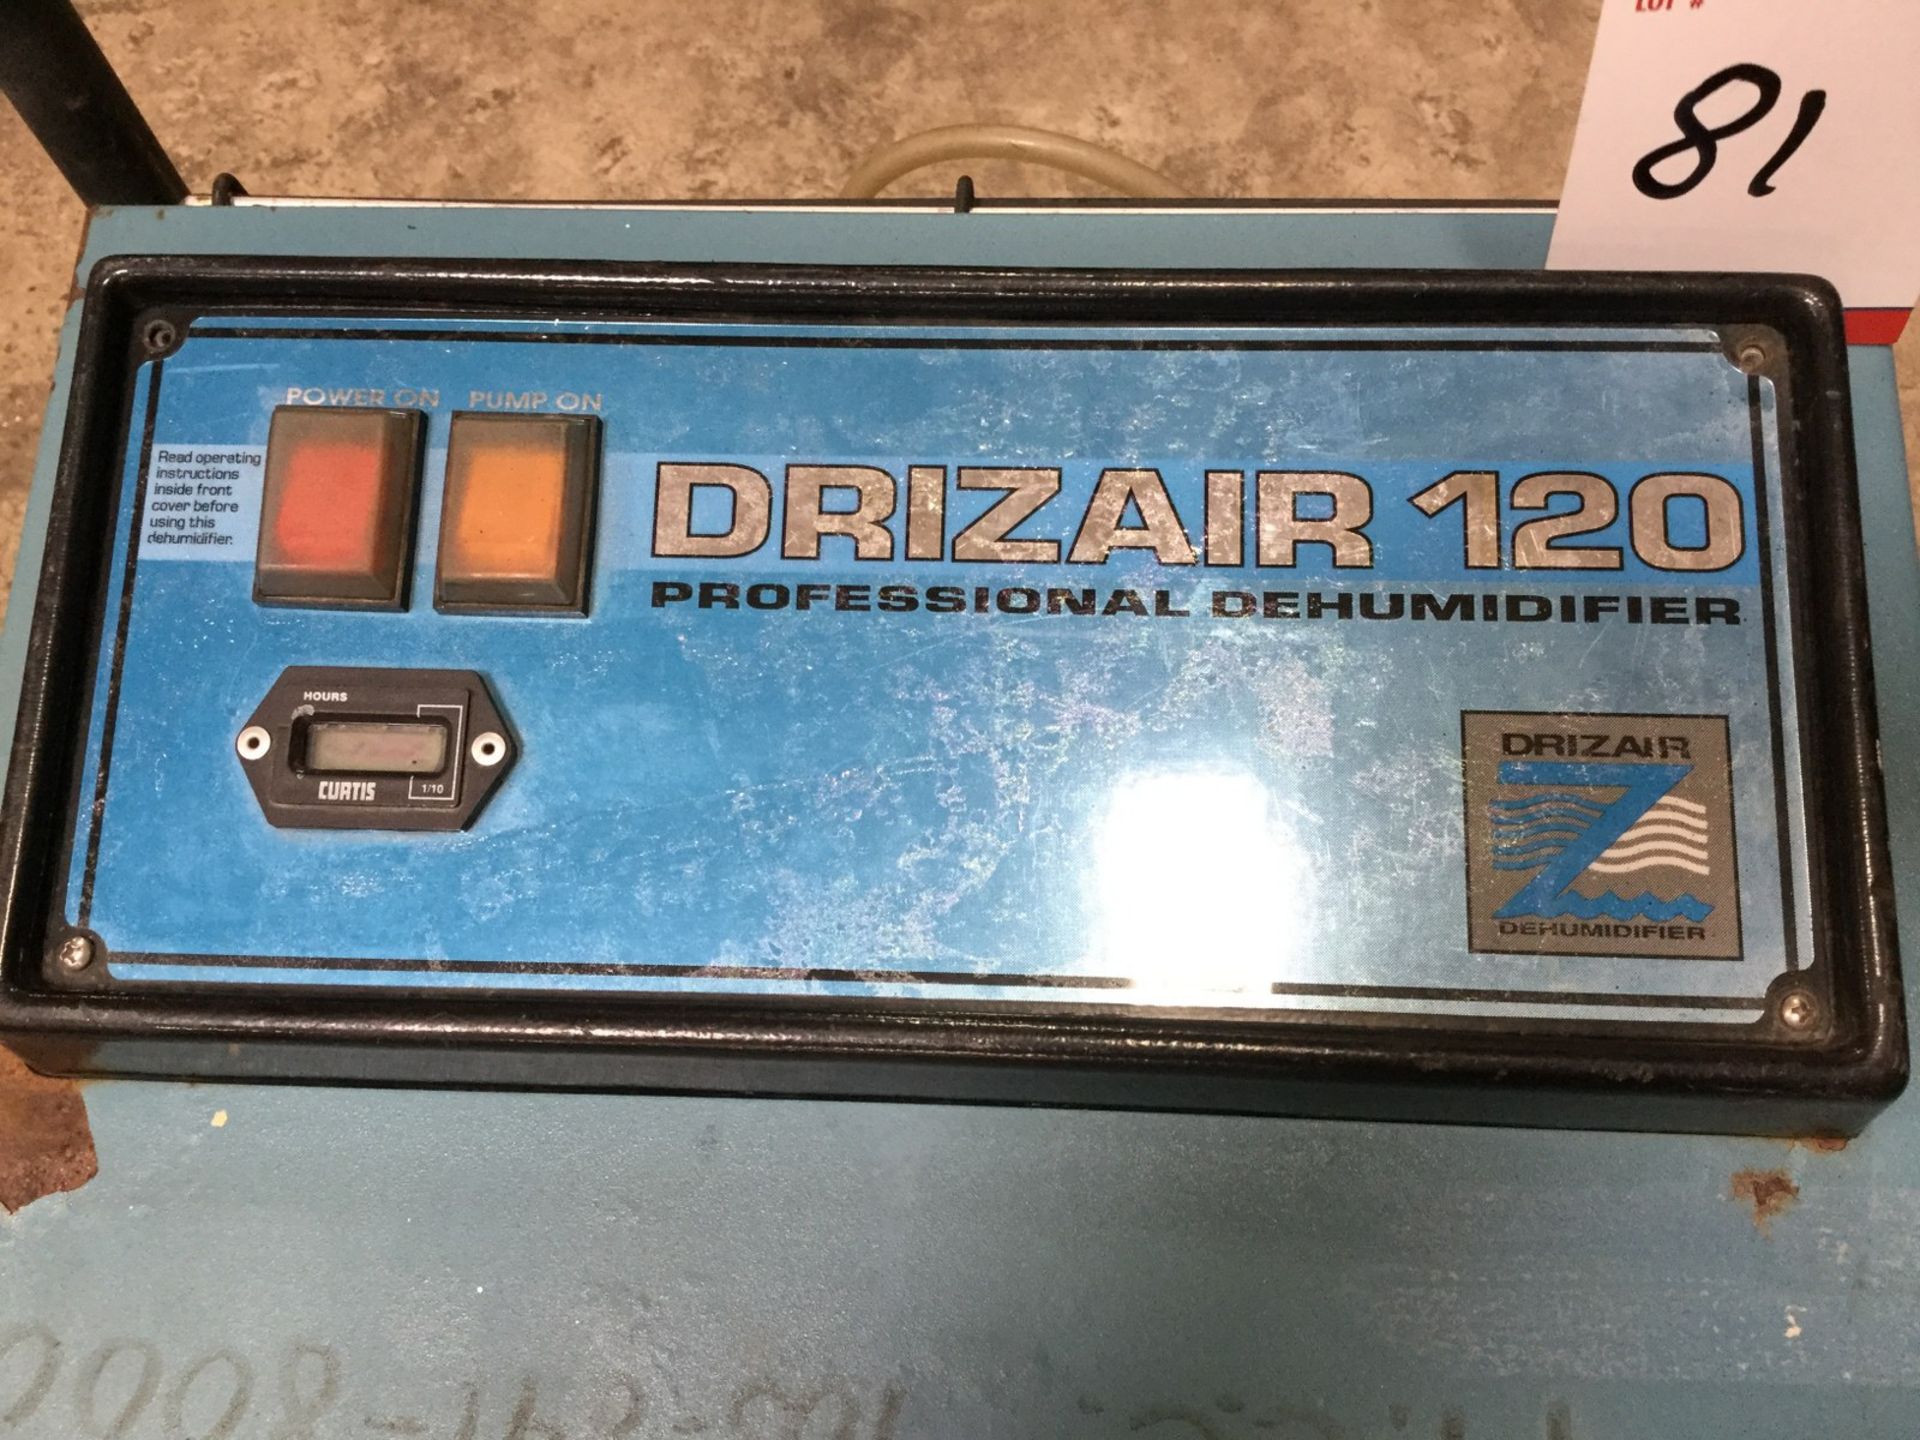 LOT OF 3 ITEMS -- DRIZAIR 120 PROFESSIONAL DEHUMIDIFIER - MODEL # DRIZAIR 120; DRI-EAZ SAHARA 1 - Image 2 of 6